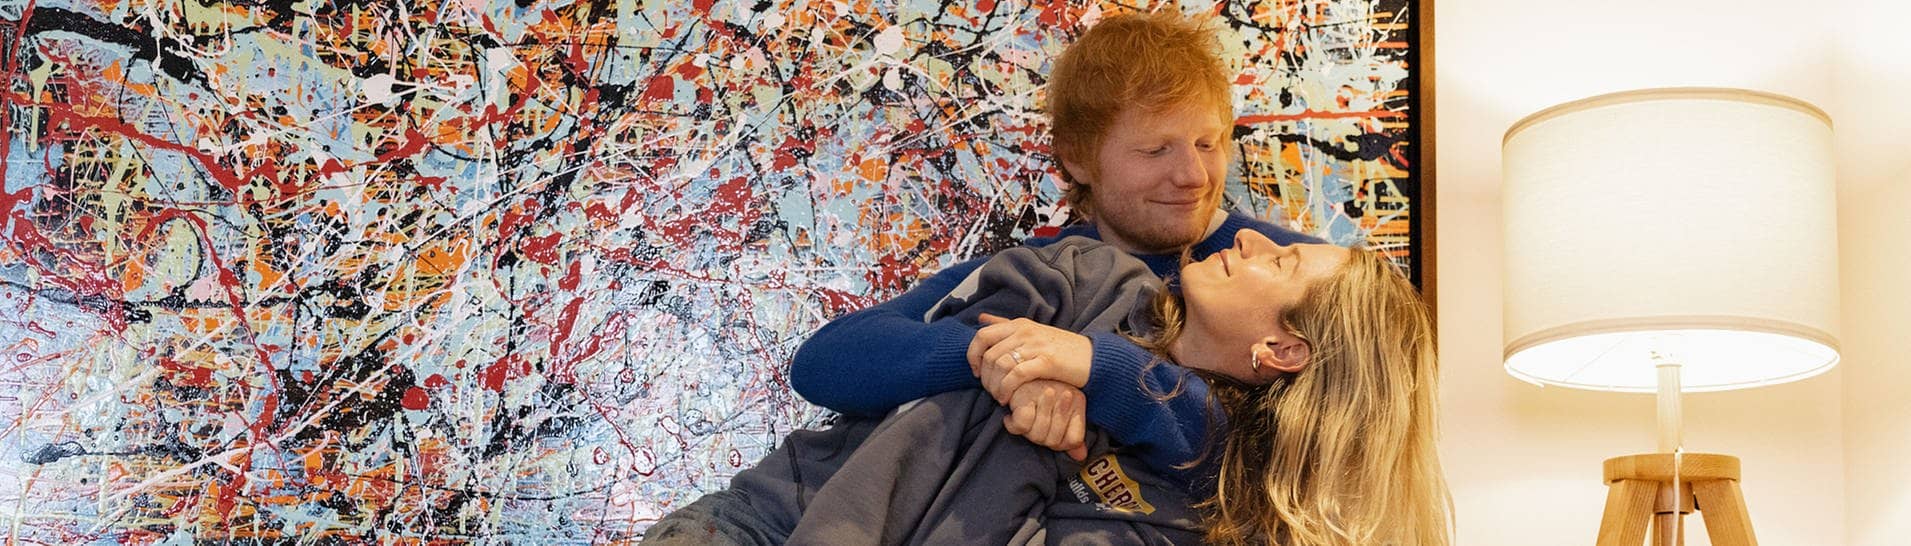 Sänger Ed Sheeran und seine Frau Cherry Seaborn vor einem bunten Bild (Foto: Sofi Adams)